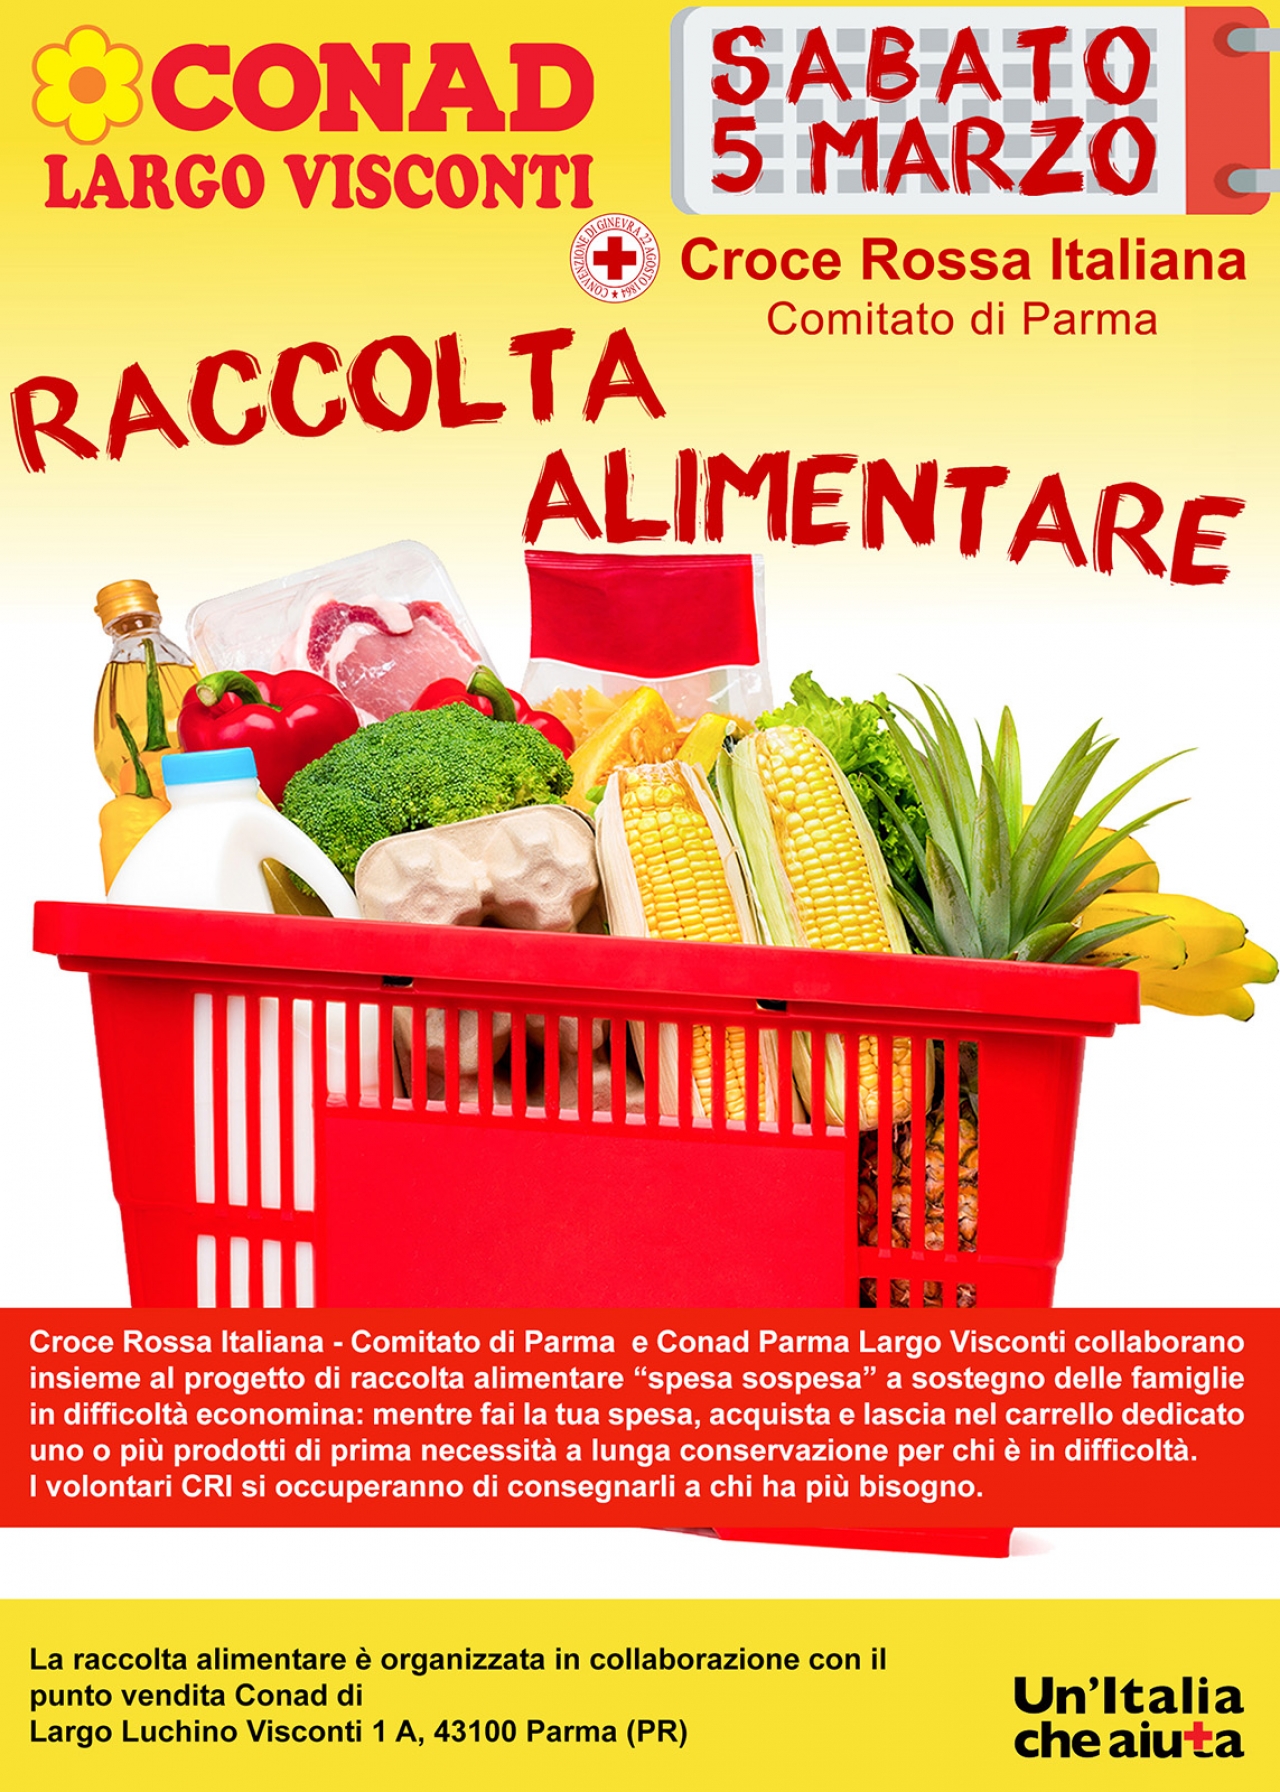 Sabato 5 marzo importante raccolta alimentare promossa da Conad Largo Visconti in collaborazione con Croce Rossa Parma